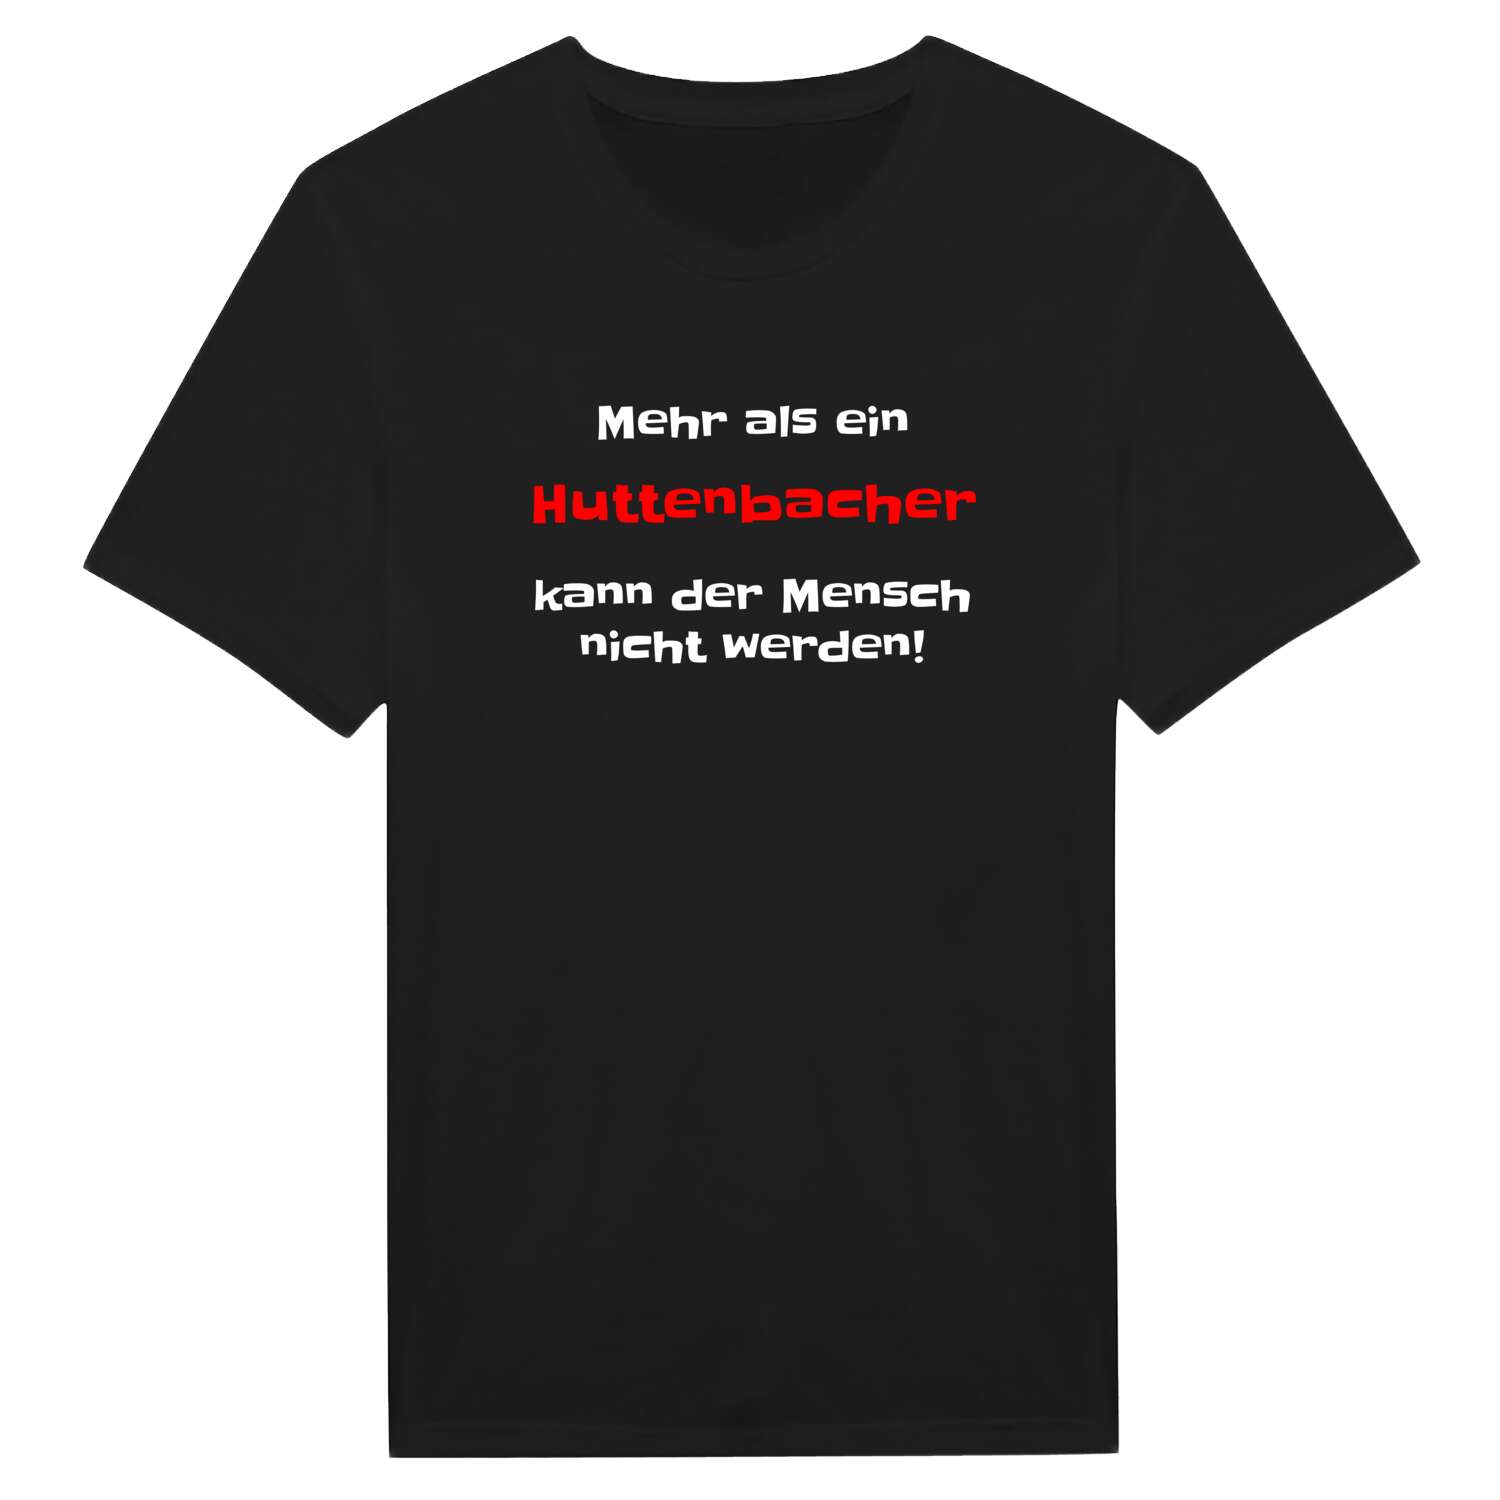 Huttenbach T-Shirt »Mehr als ein«